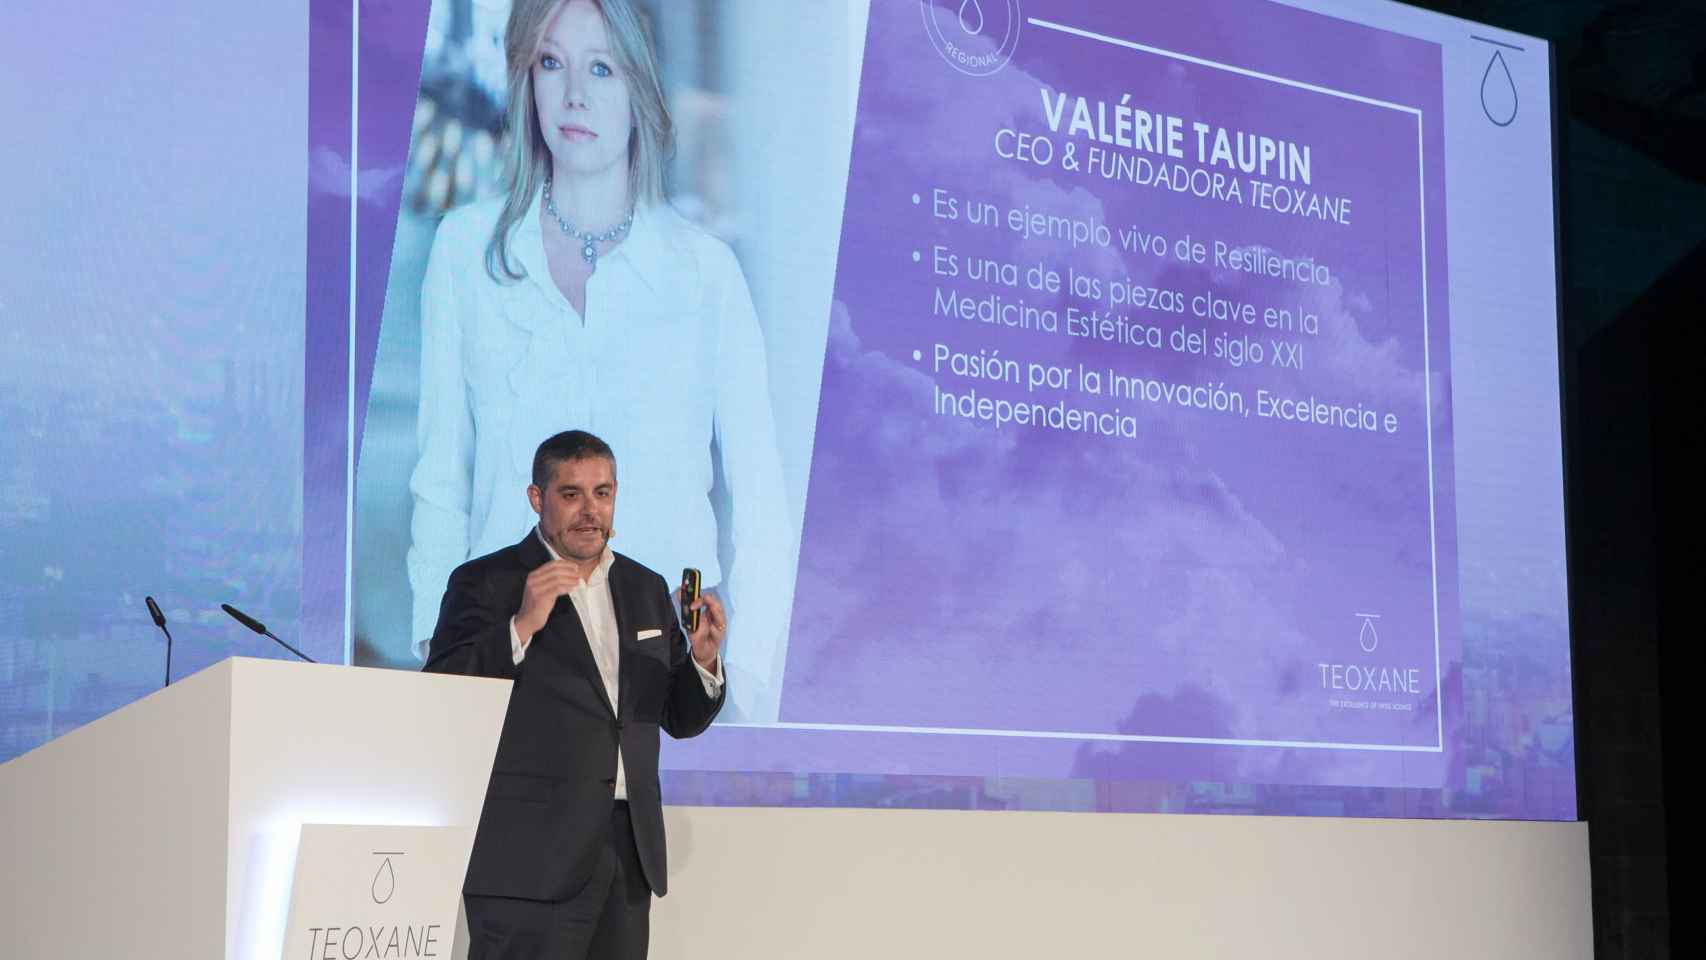 David Fernández, consejero delegado (CEO) de Teoxane Ibérica, en un acto con la imagen de Valerie Taupin